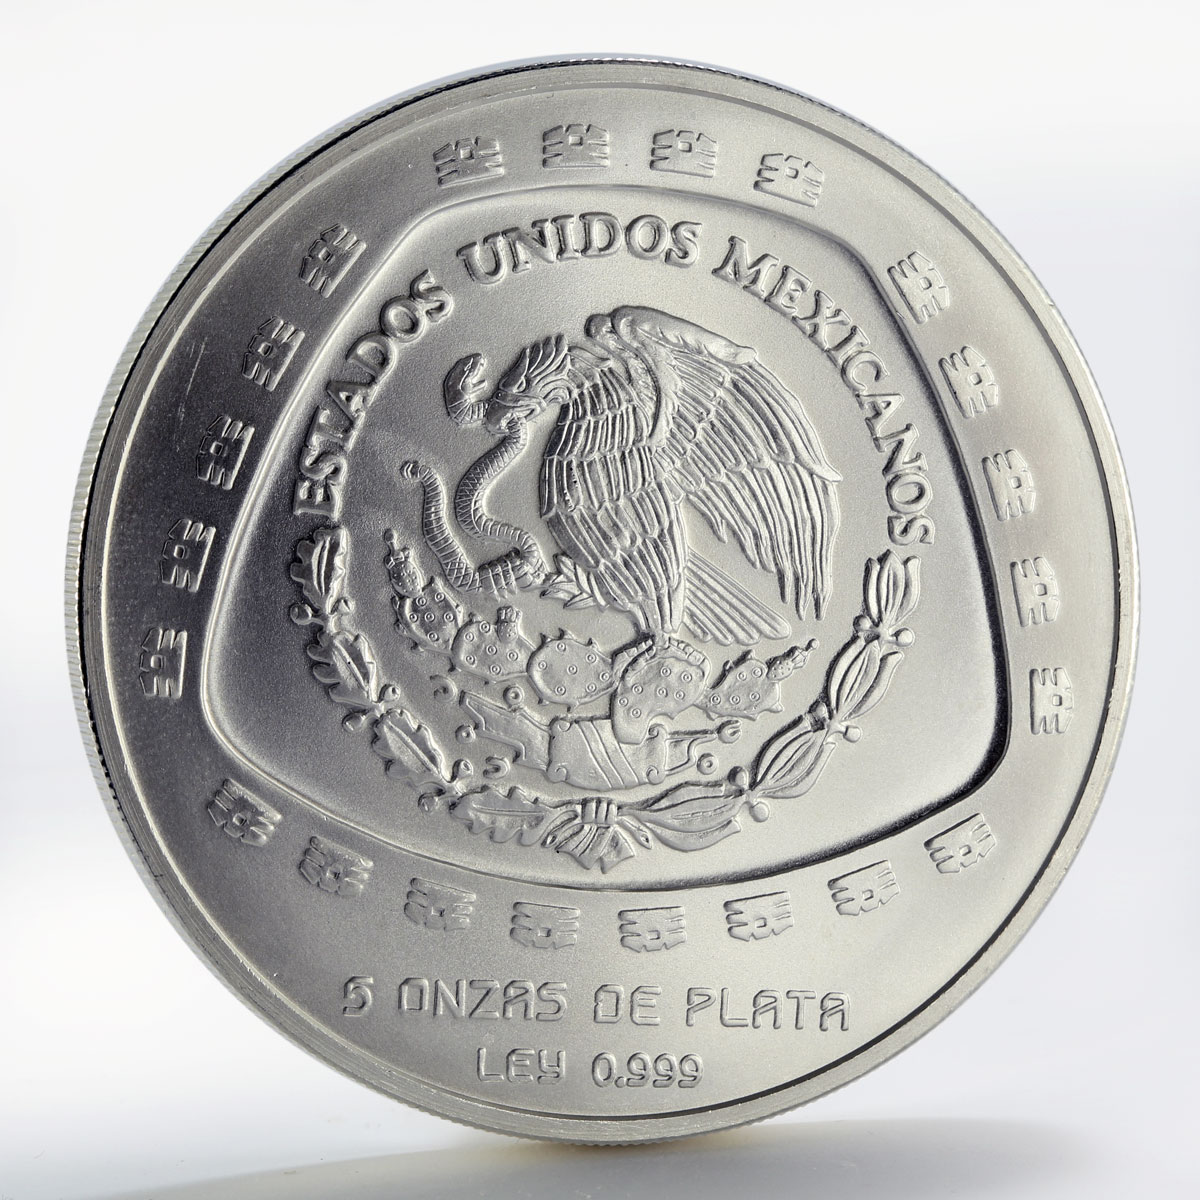 Mexico 10 pesos Atlantes Toltec Series silver coin 1998